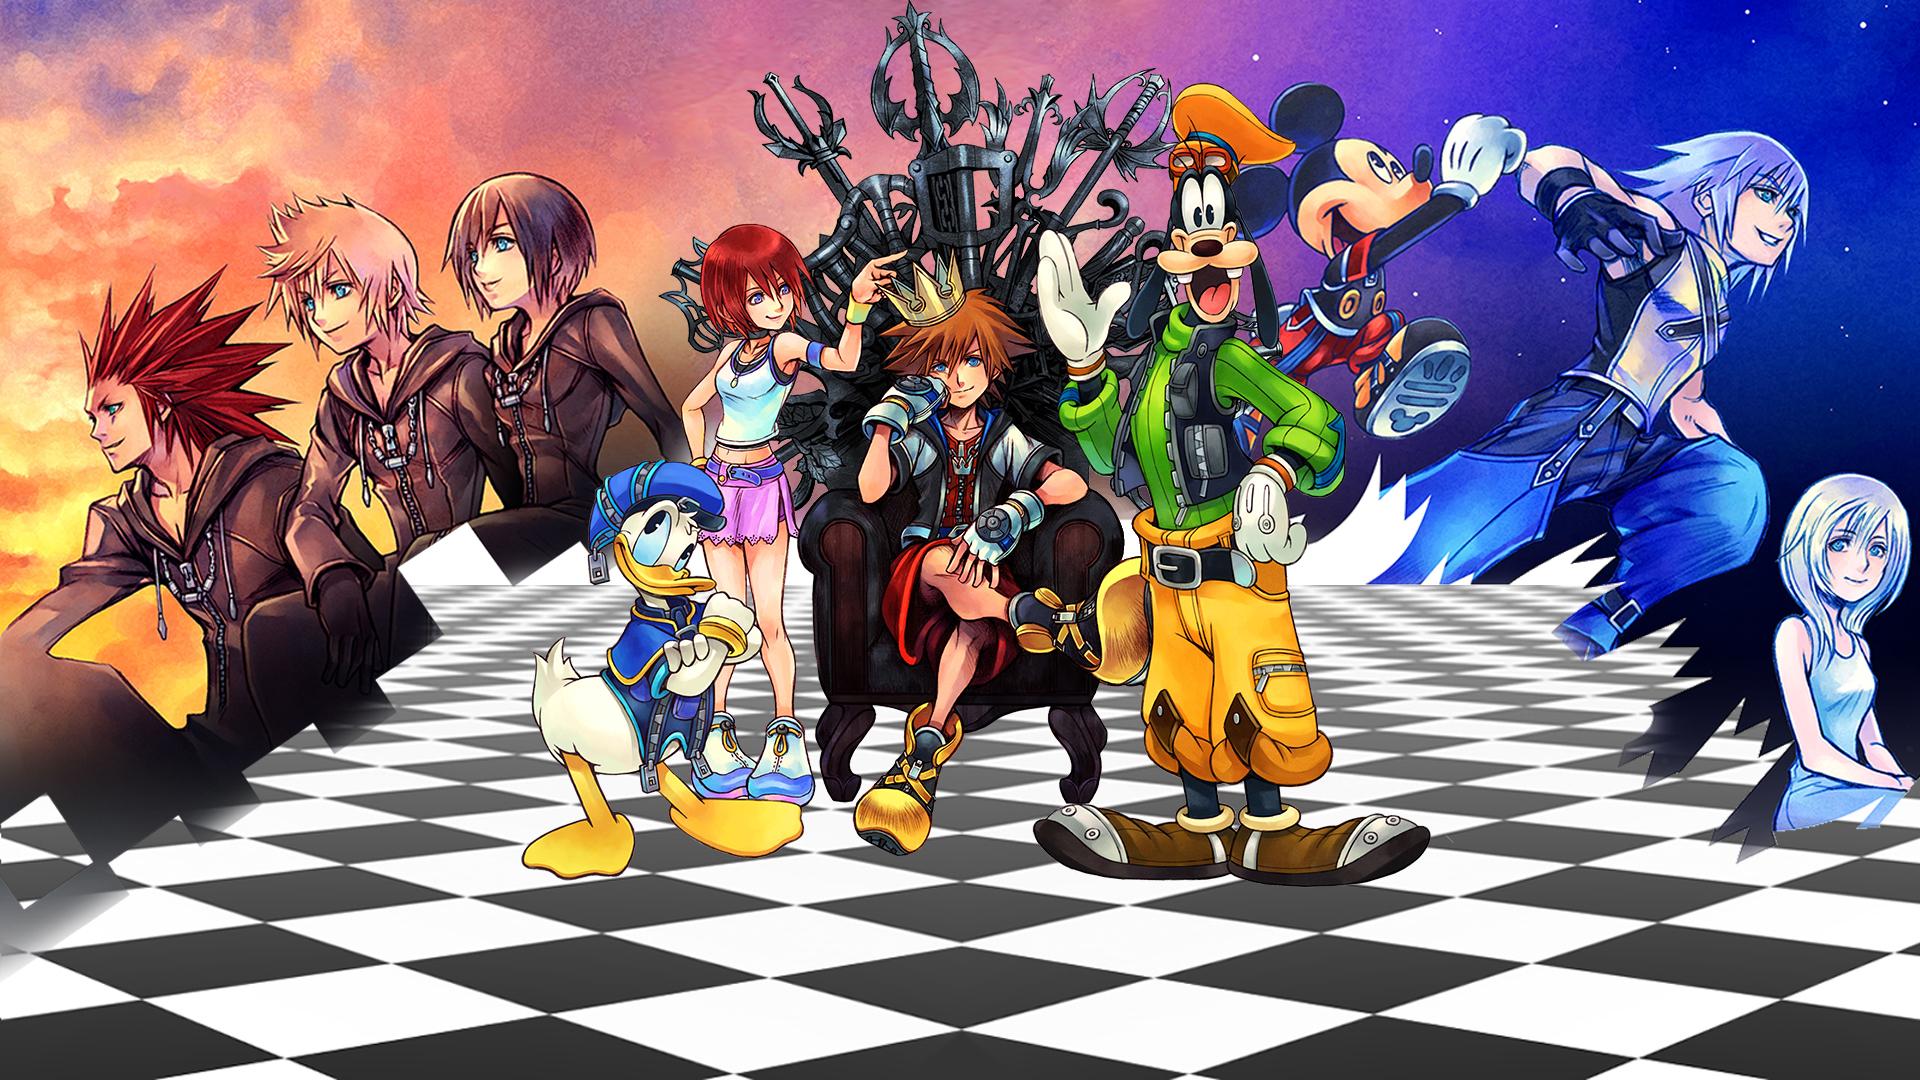 1920 x 1080 · jpeg - Kingdom Hearts Wallpapers HD - PixelsTalk